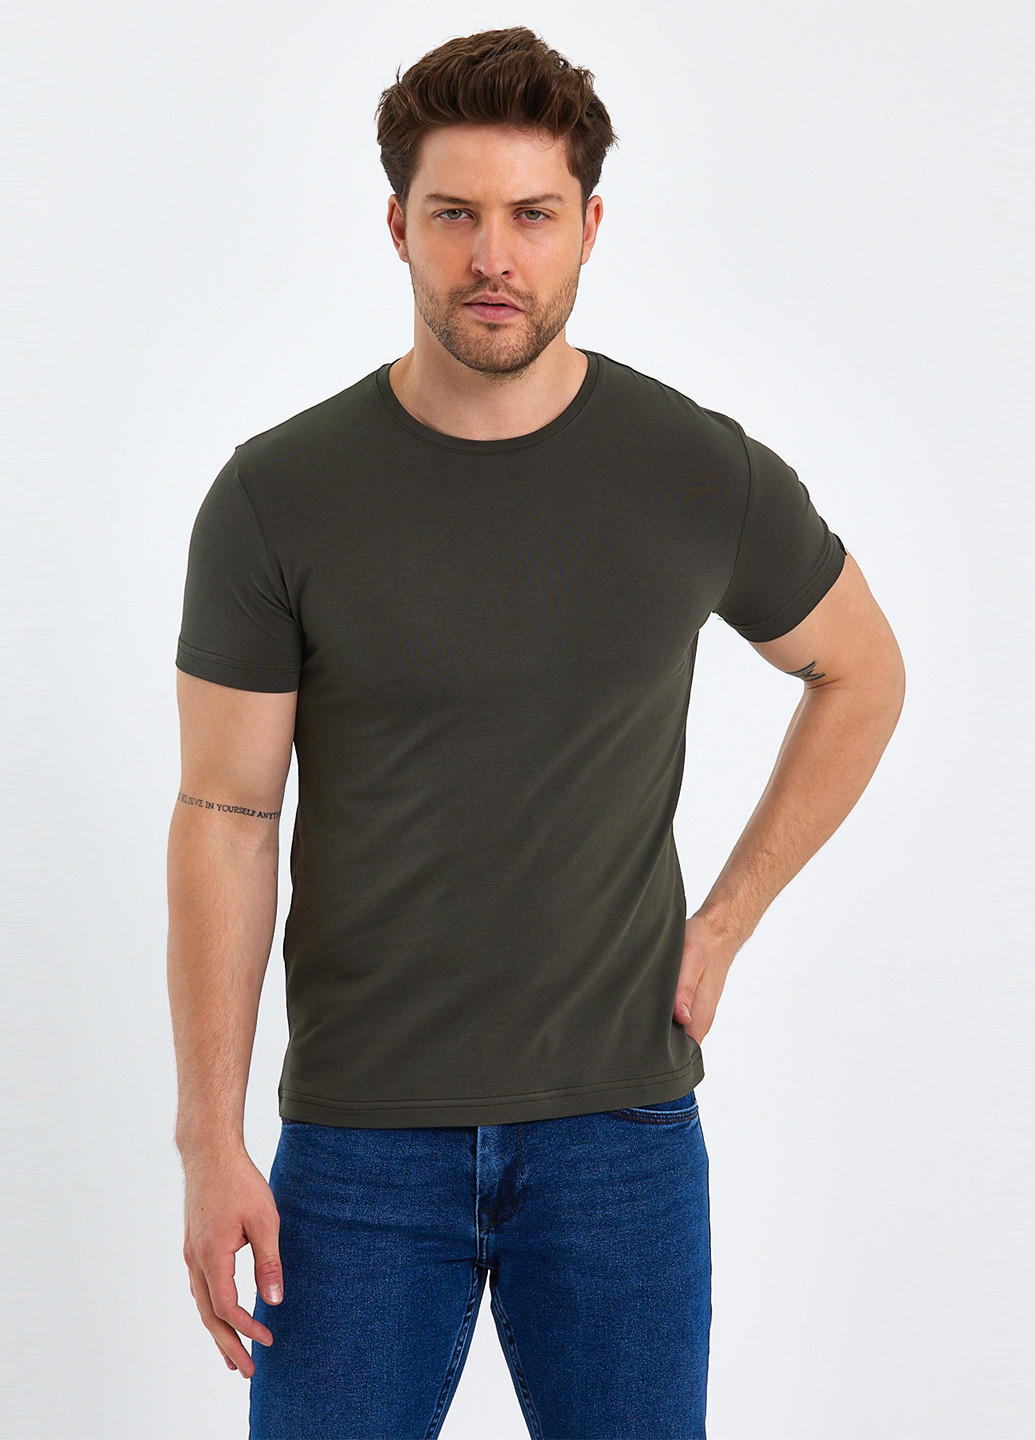 Хаки (оливковая) футболка Trend Collection